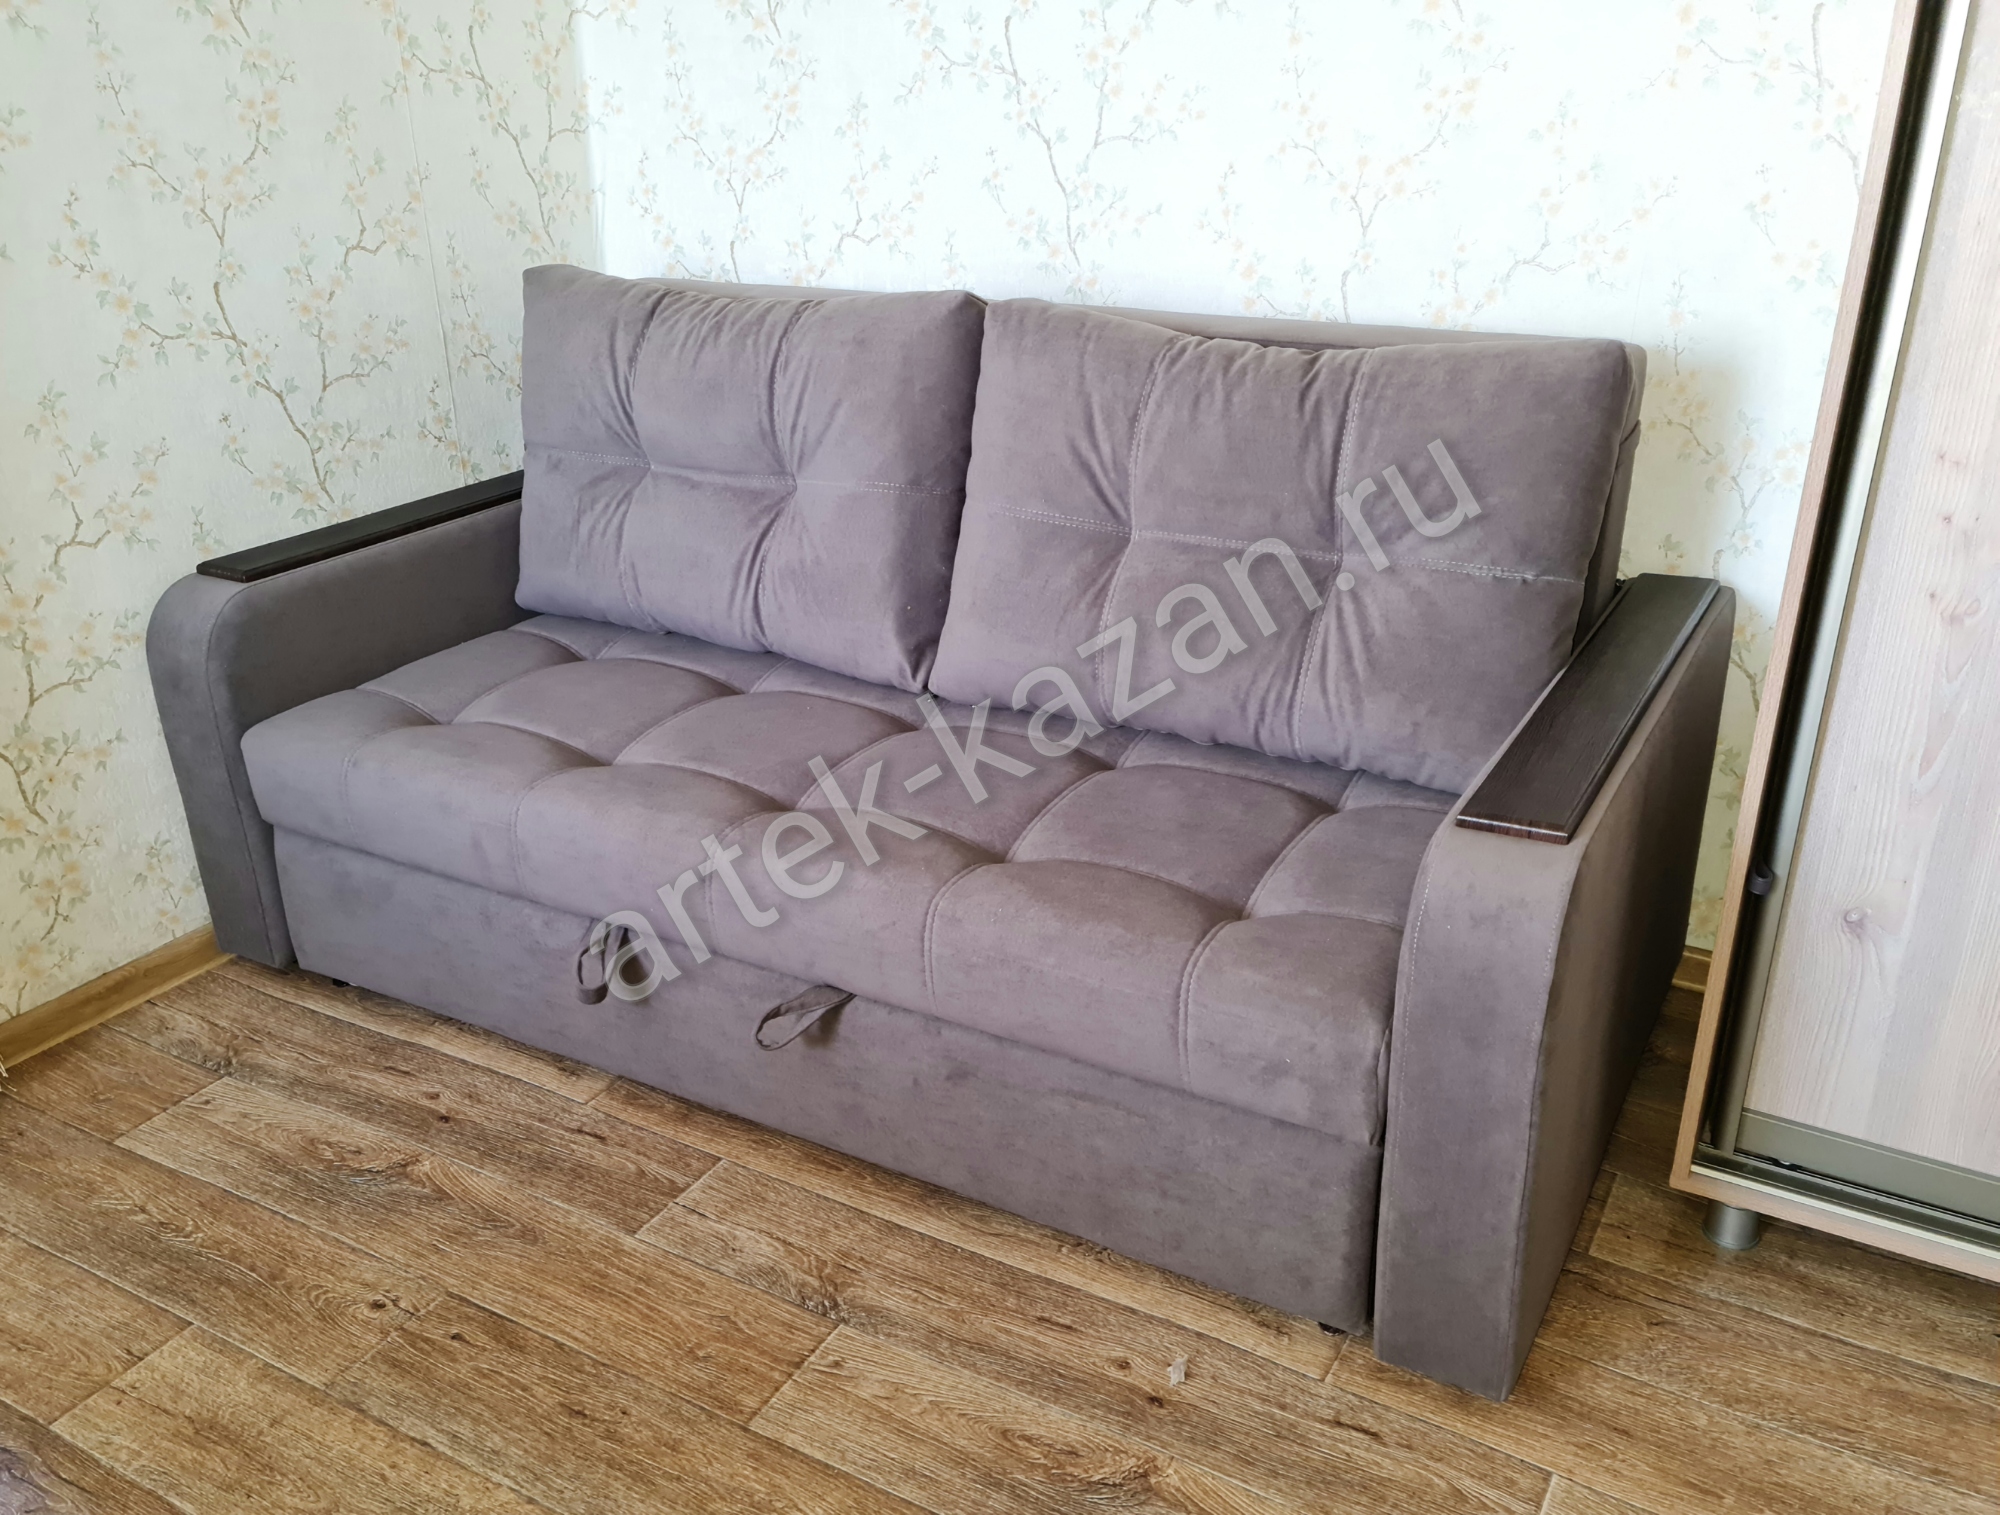 Мини диван на выкатном механизме Миник фото № 1. Купить недорогой диван по низкой цене от производителя можно у нас.